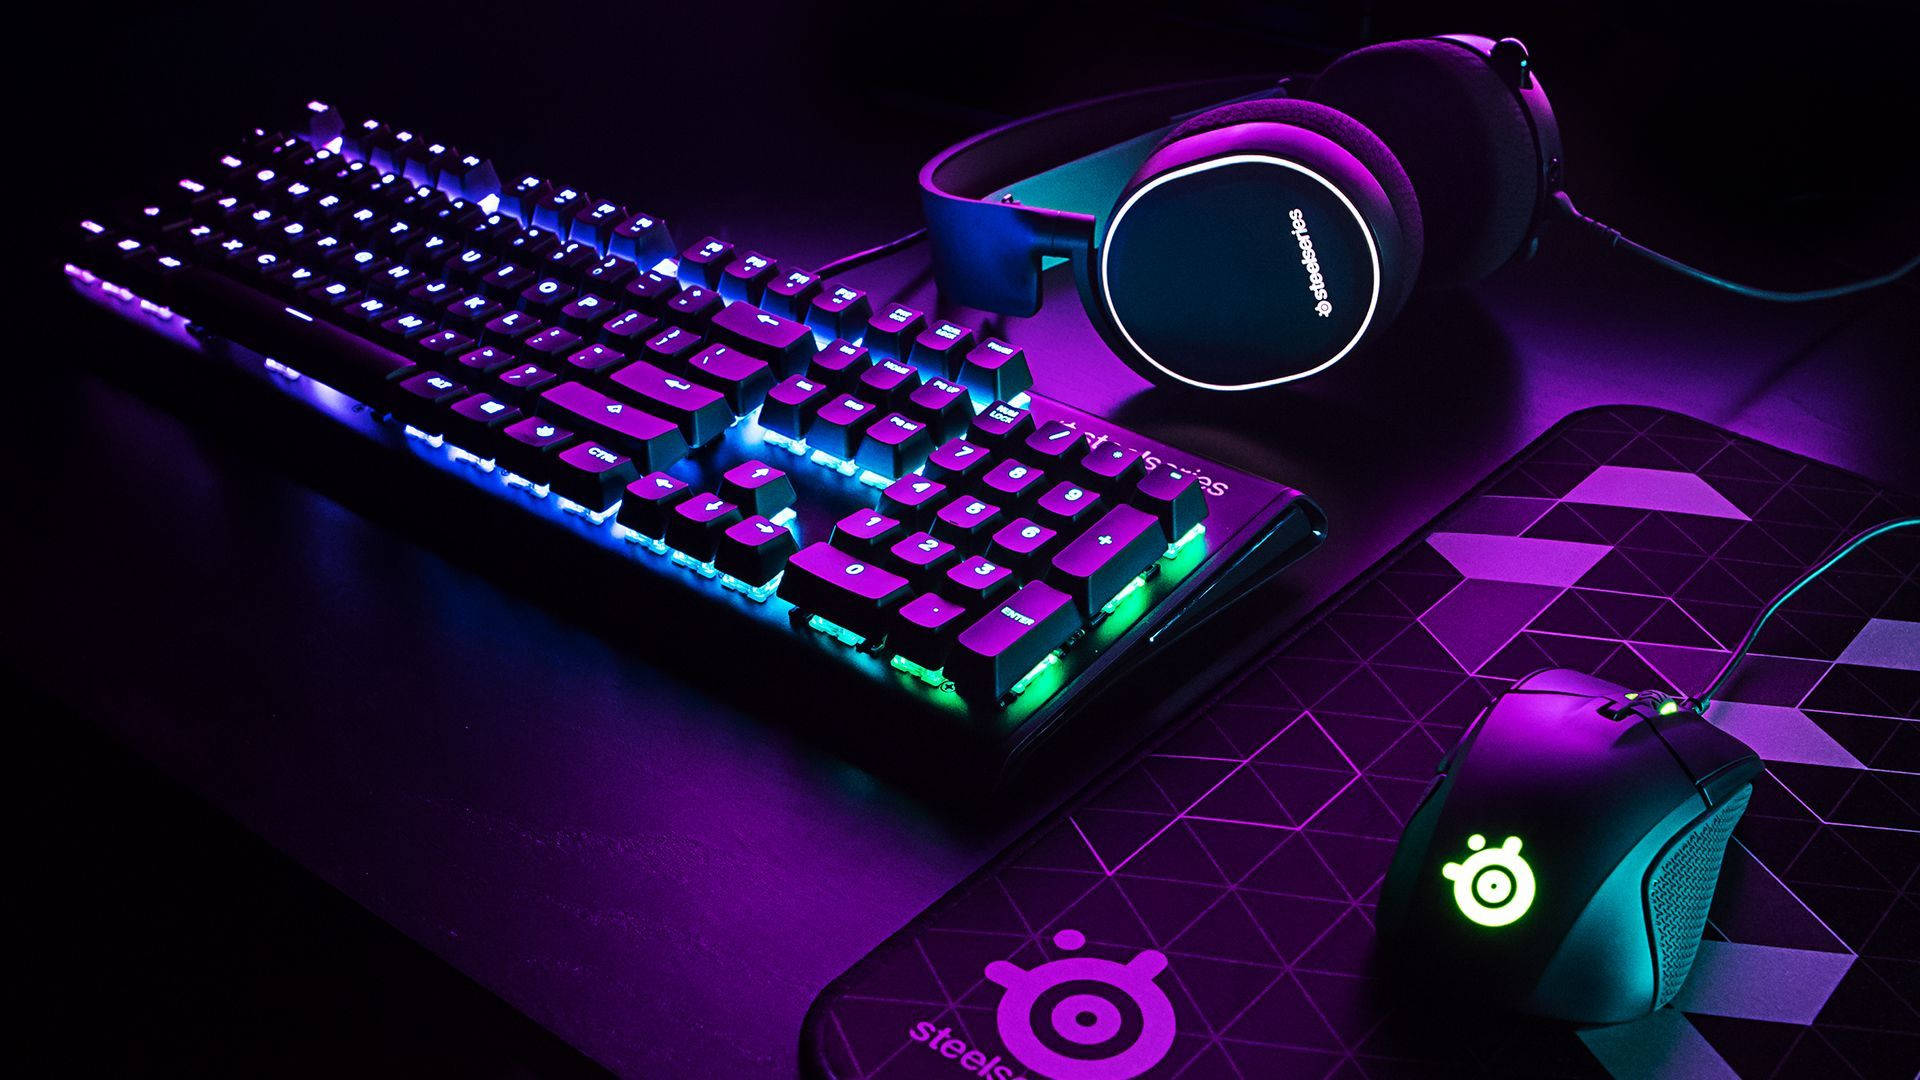 Màu tím đại diện cho sự sang trọng, đừng bỏ lỡ khung hình với purple gaming background để tạo nên một không gian chơi game độc đáo và cuốn hút. Bạn sẽ không thể rời mắt khỏi những hình ảnh sống động với nền tím ấn tượng này.